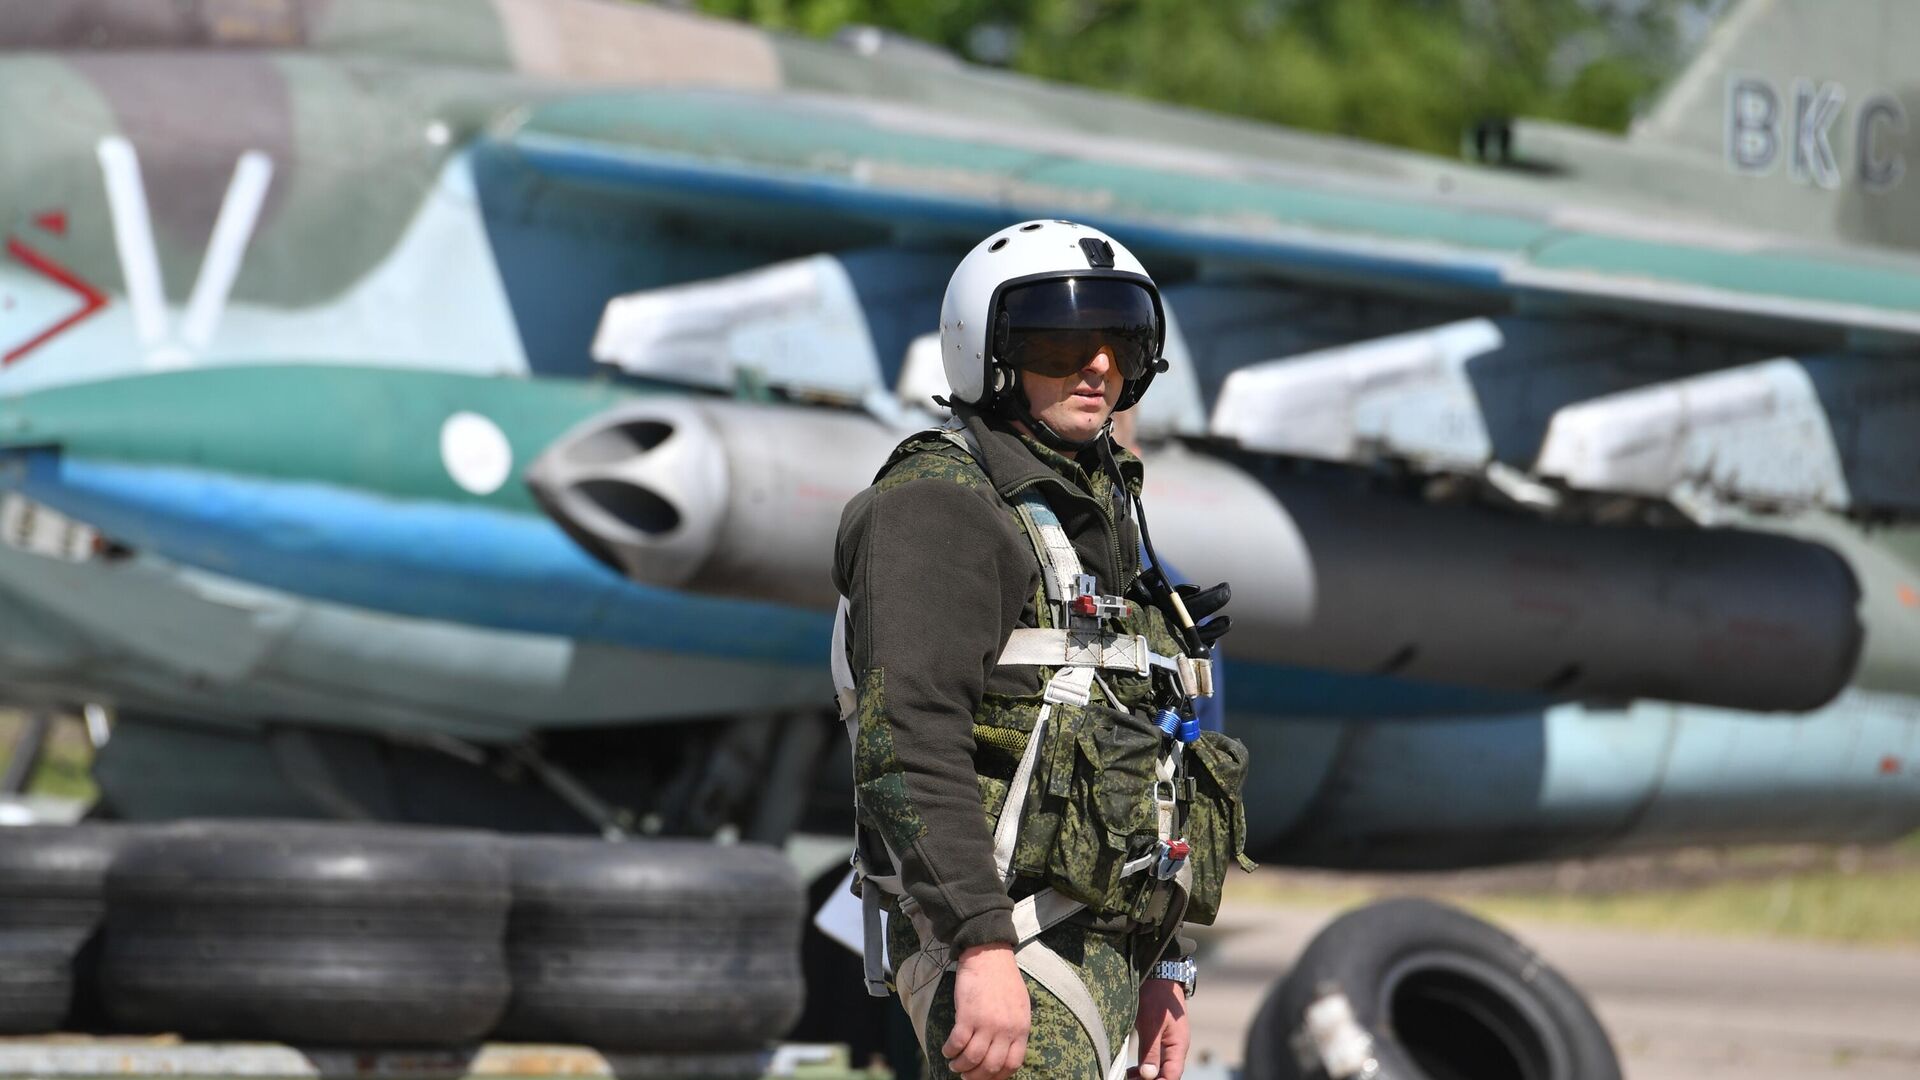 Летчик возле самолета Су-25, задействованного в специальной военной операции. - РИА Новости, 1920, 09.07.2022